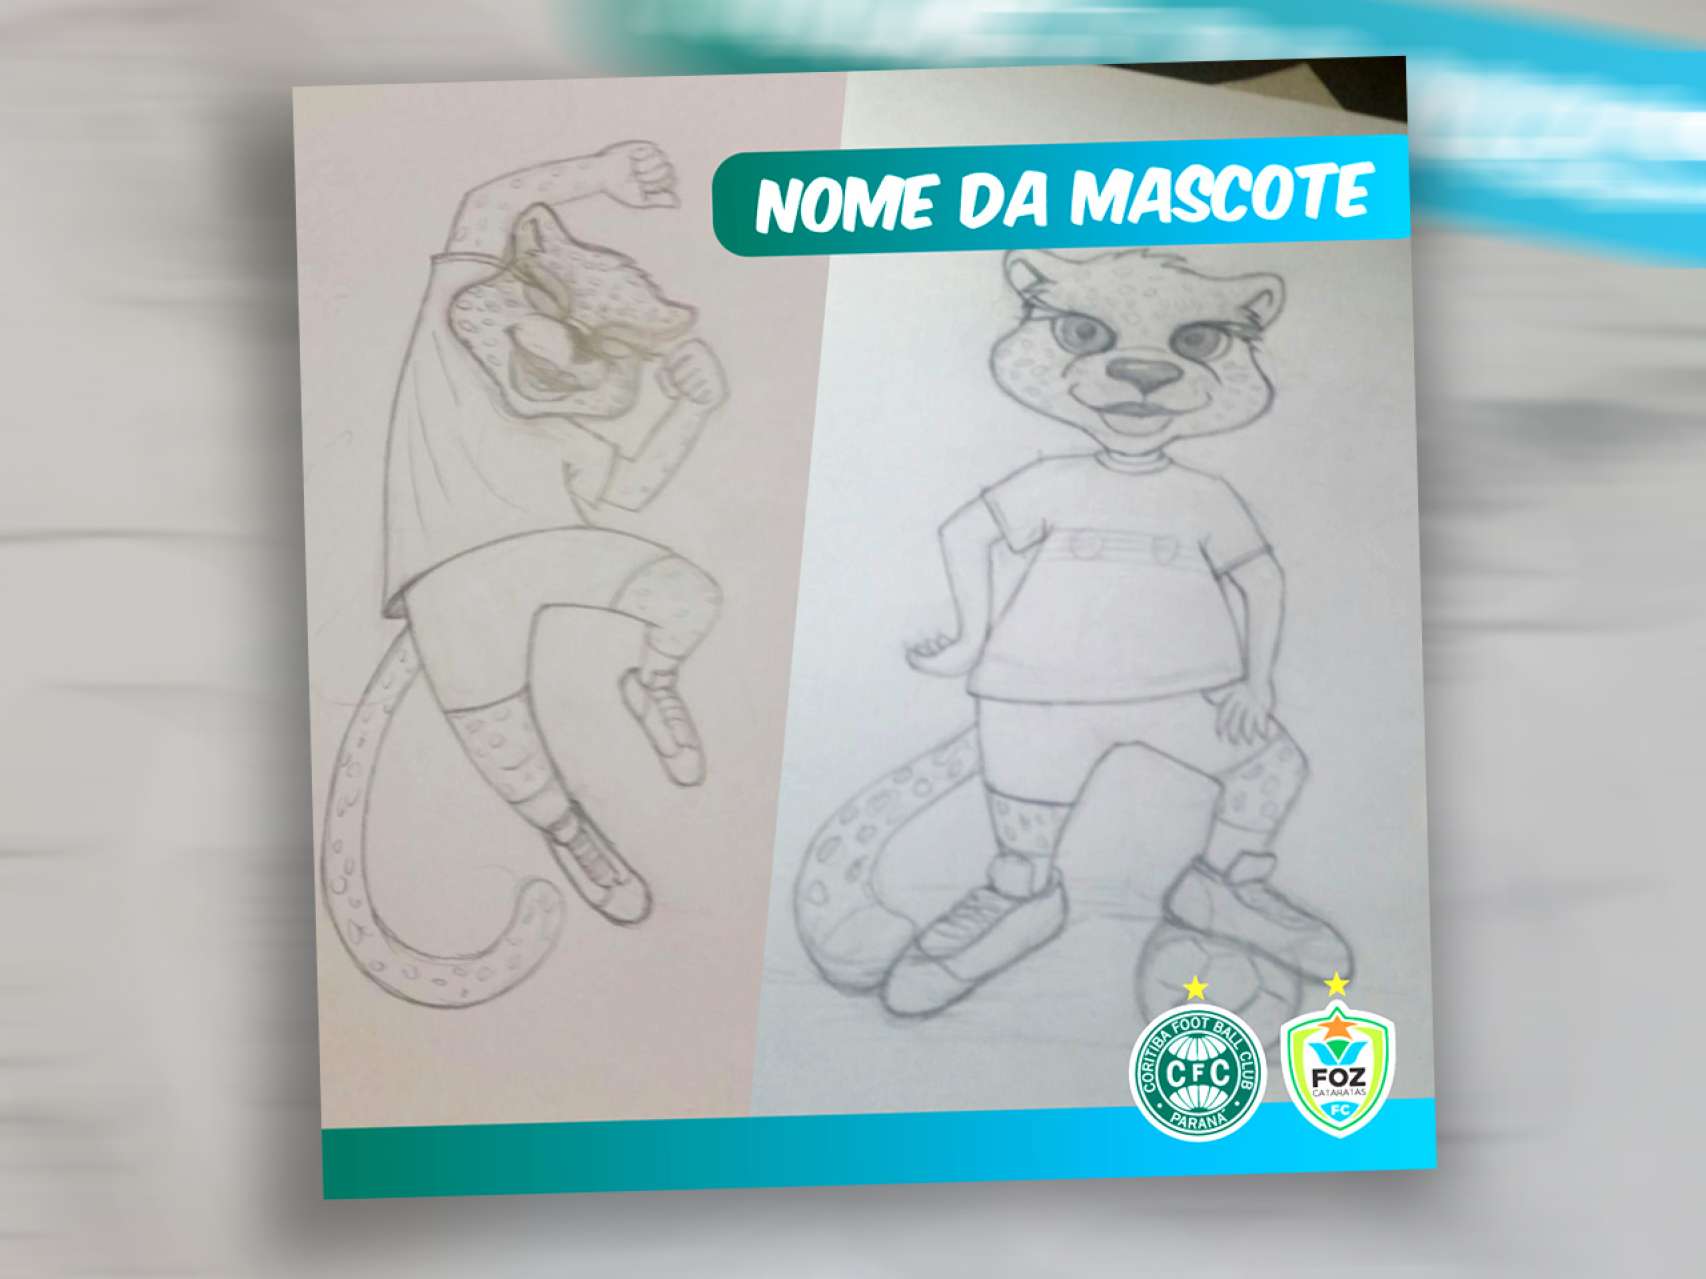 Escolha o nome da mascote do Foz Cataratas/Coritiba